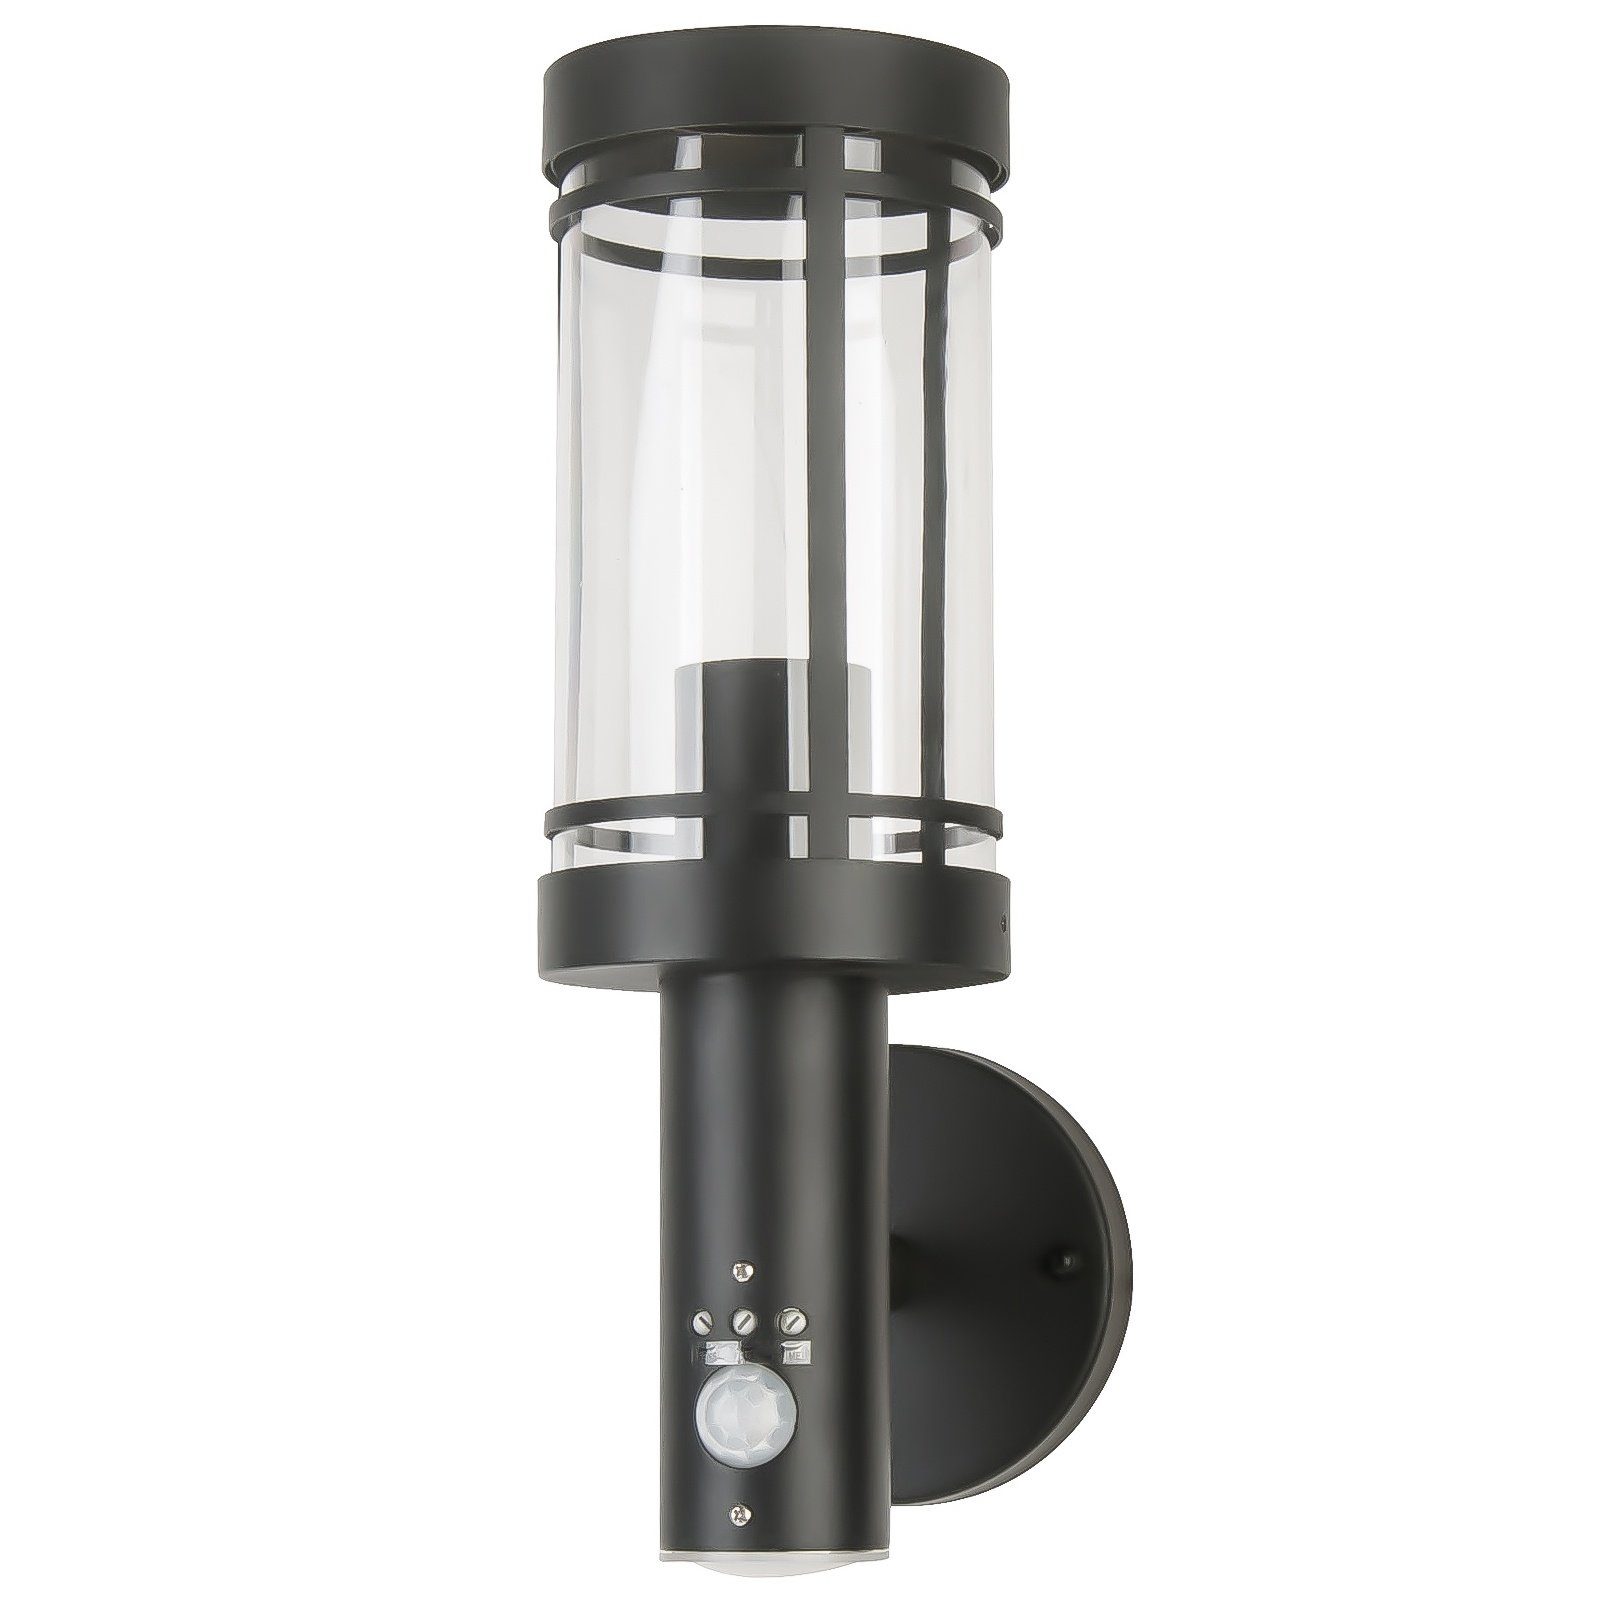 Grafner Wandleuchte Edelstahl Wandlampe mit Bewegungsmelder Anthrazit WL11003 Wandleuchte, ohne Leuchtmittel, Höhe: ca. 33,5 cm, Breite: ca. 18,5 cm, Sensorgesteuert, Wandlampe